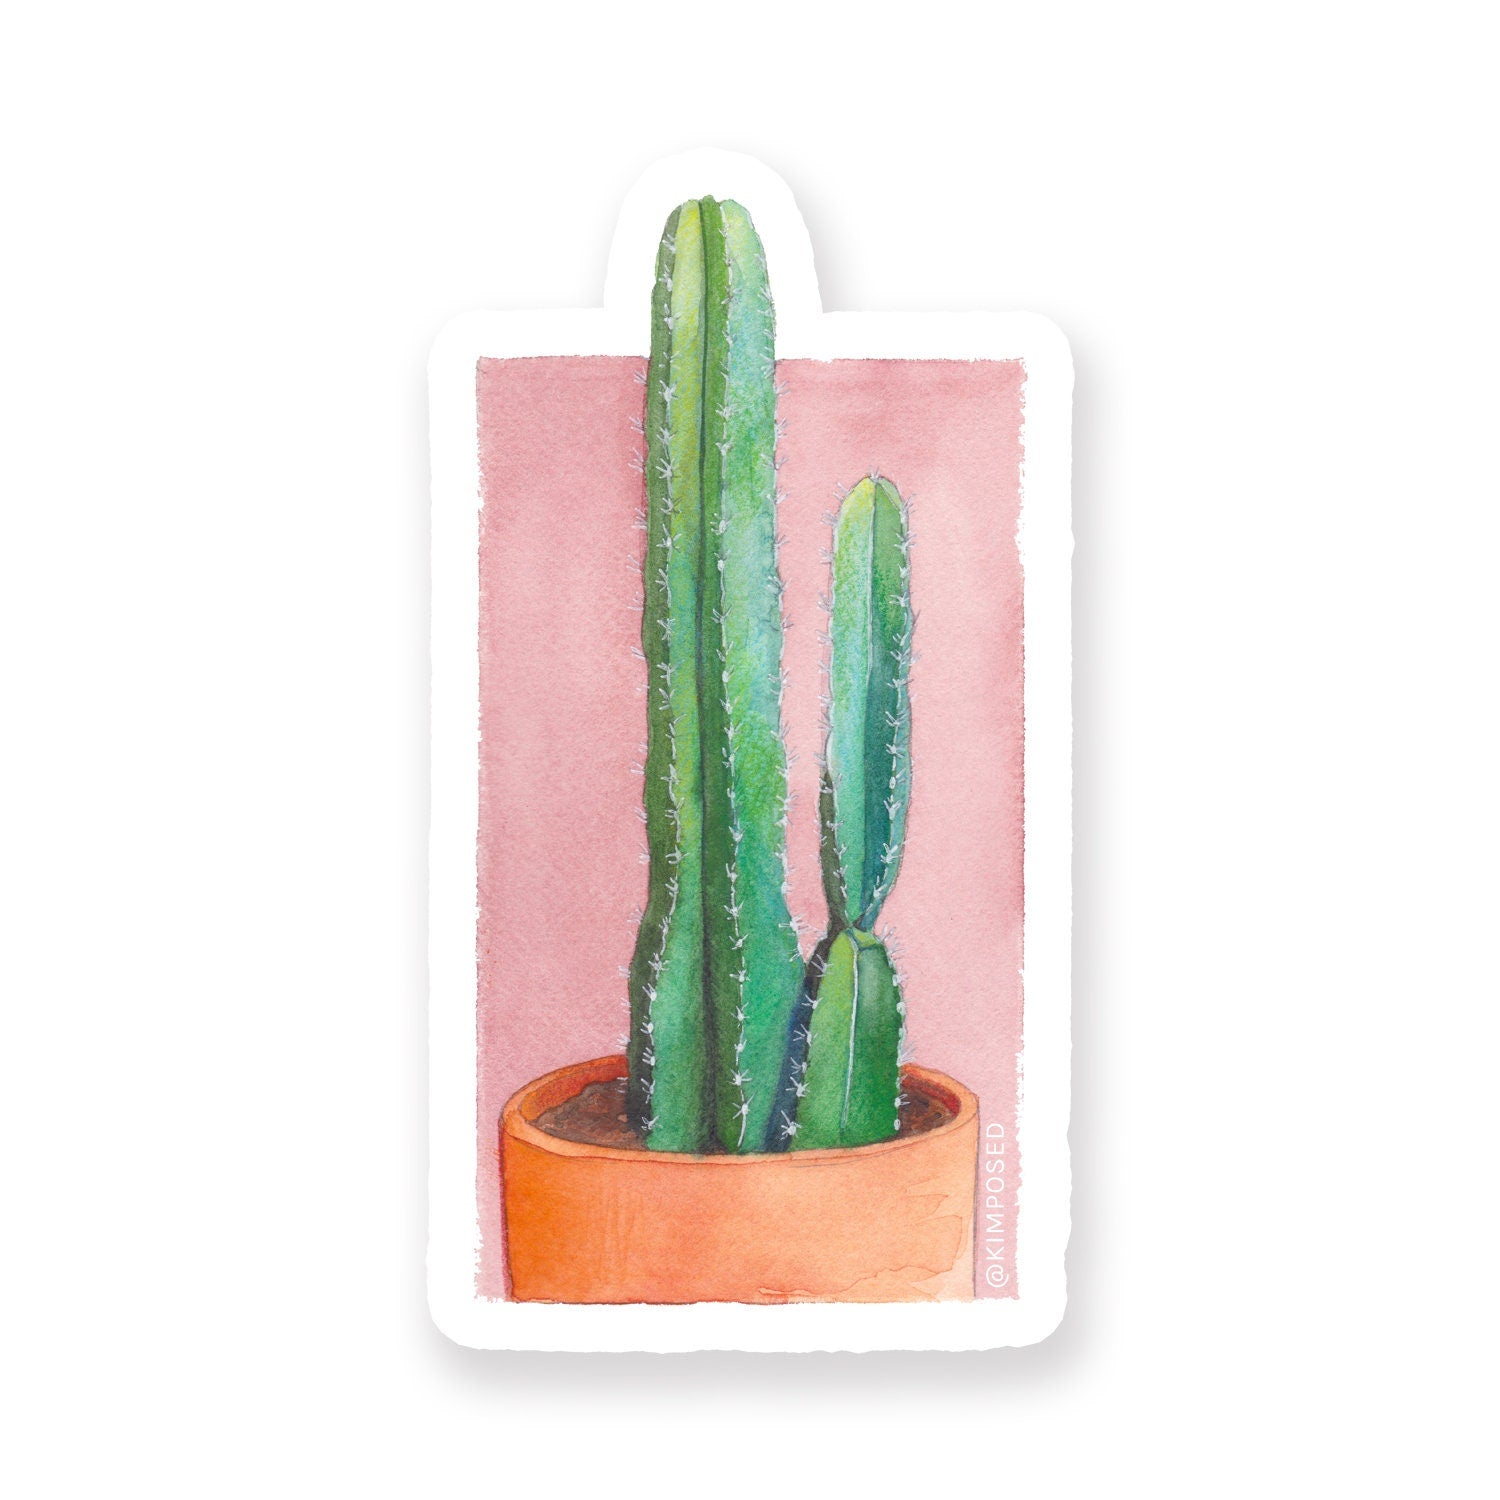 Saguaro Cactus 3" Waterproof Vinyl Sticker for Water Bottles, Laptops, Phones & More **FREE USA SHIPPING**